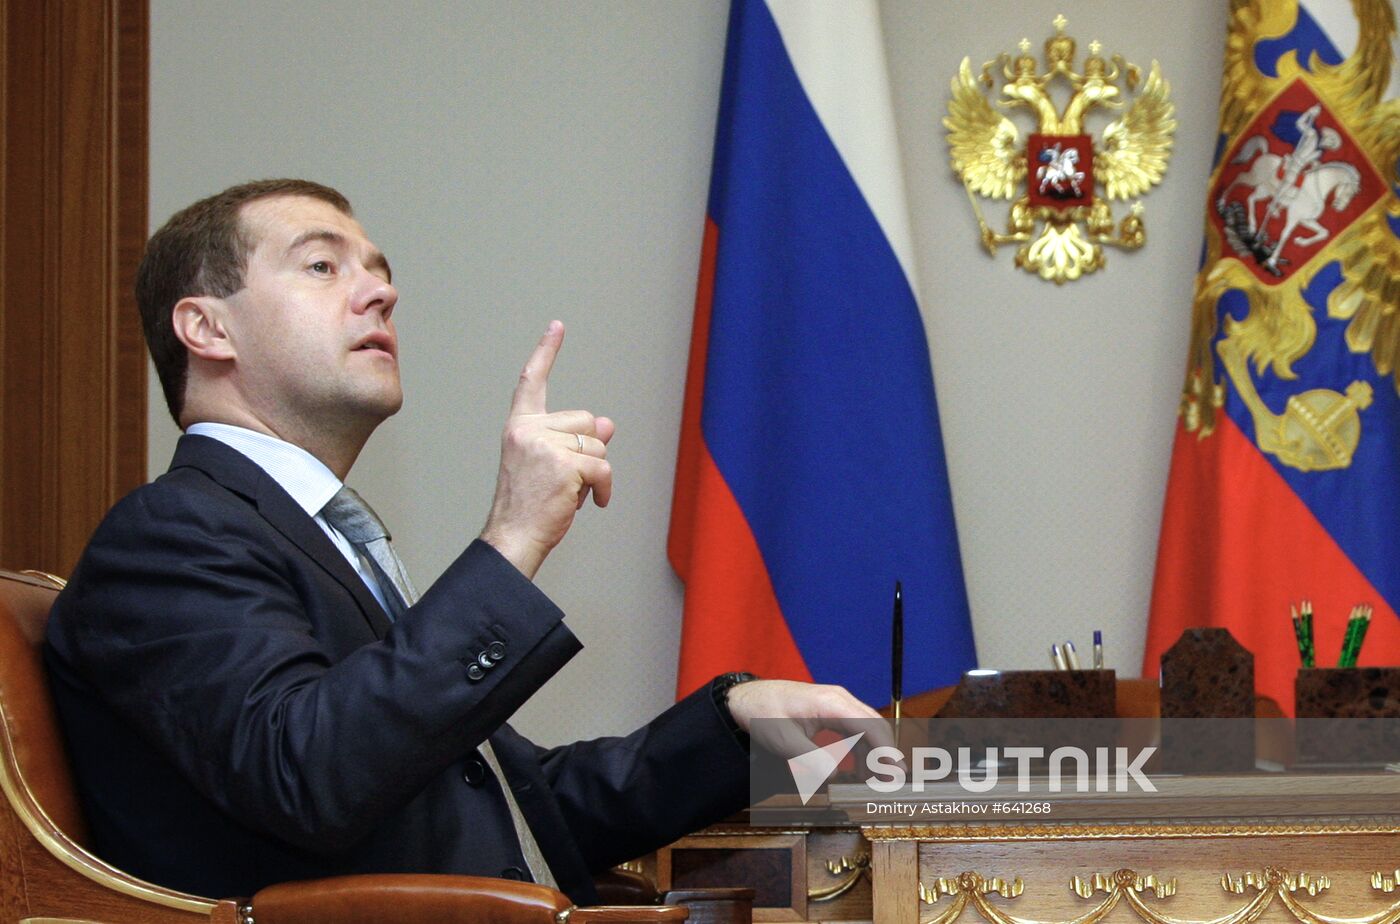 Dmitry Medvedev and Anatoly Serdyukov in Sochi